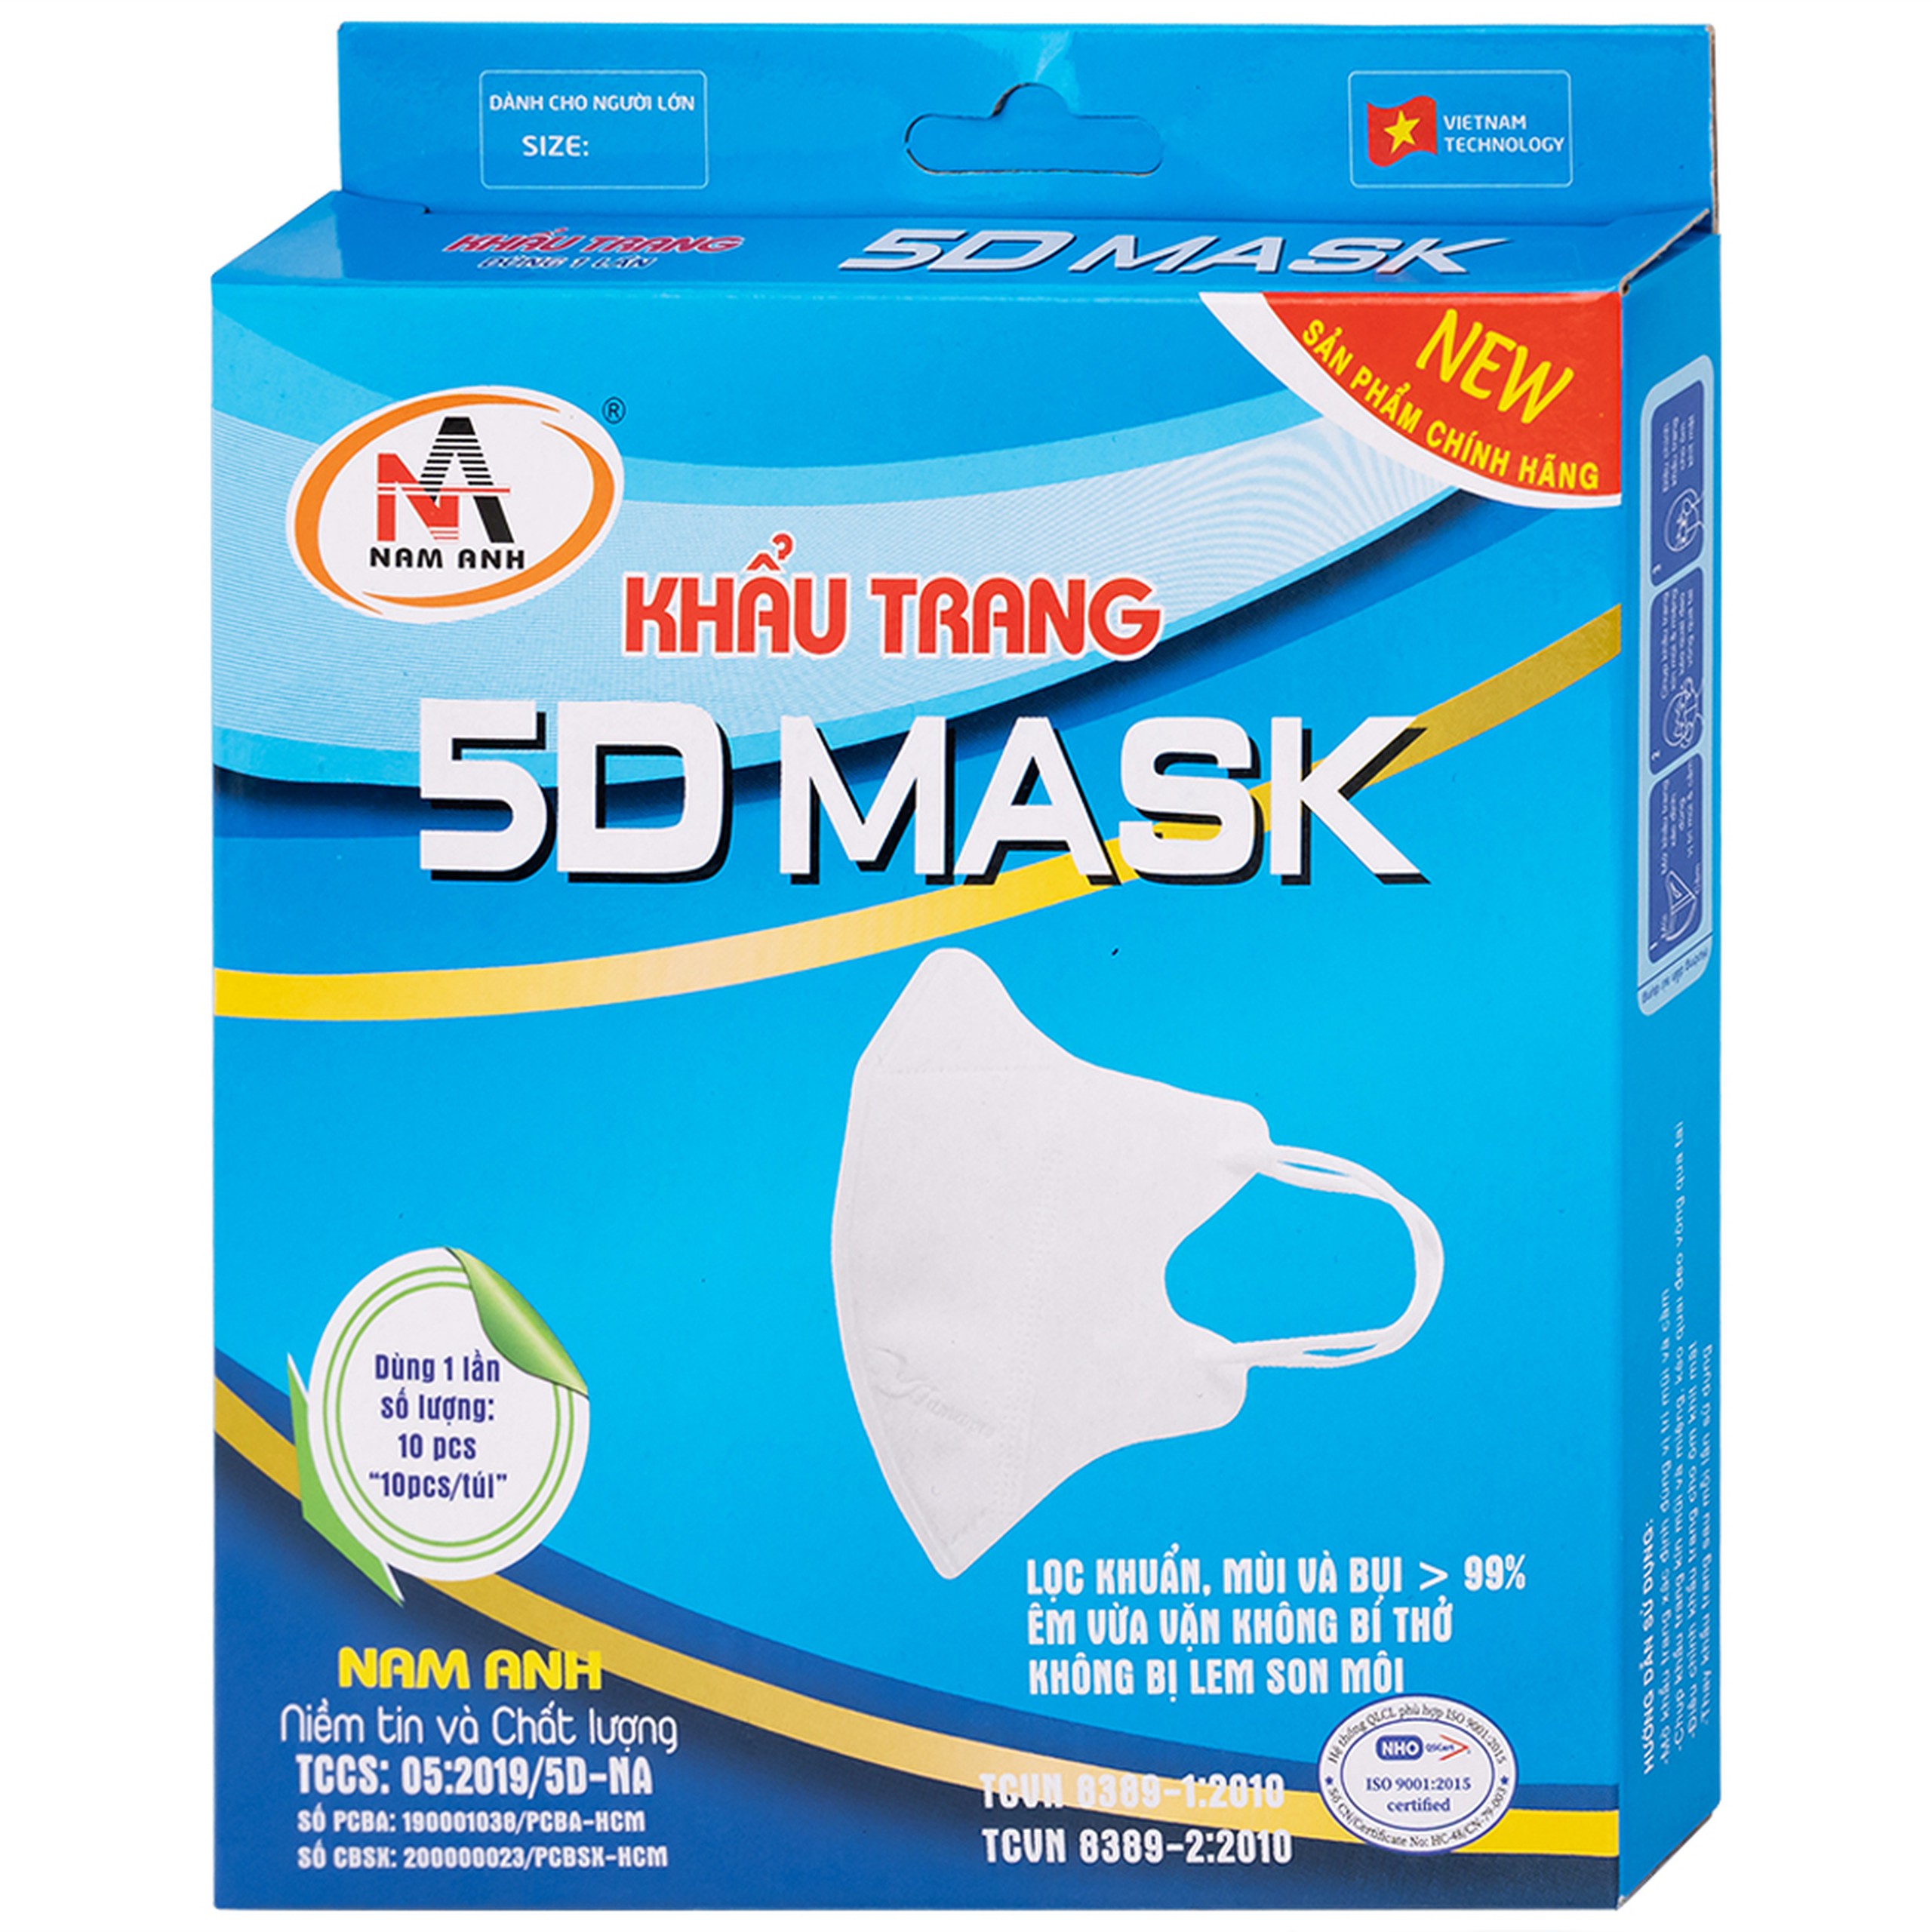 Khẩu trang 5D Mask Nam Anh lọc khuẩn, mùi và bụi trên 99% (10 cái)